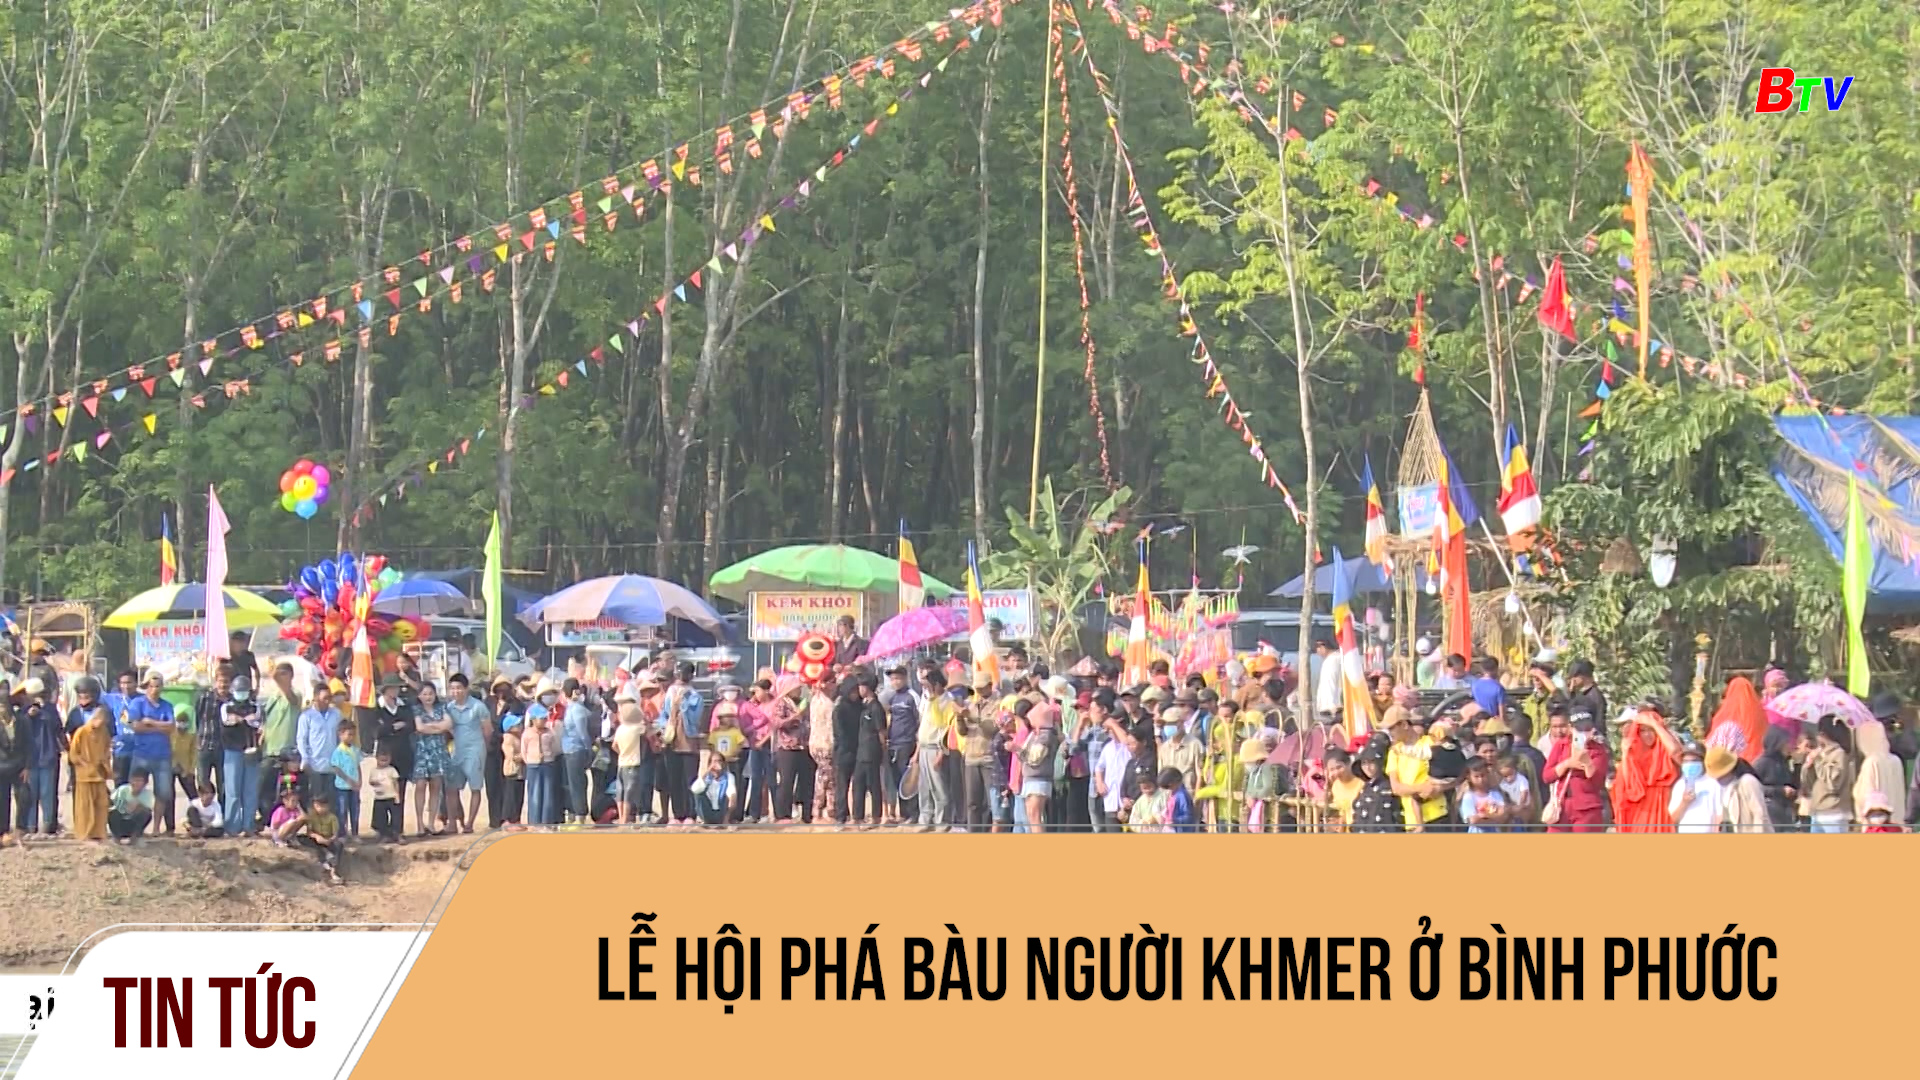 Lễ hội Phá Bàu người Khmer ở Bình Phước	